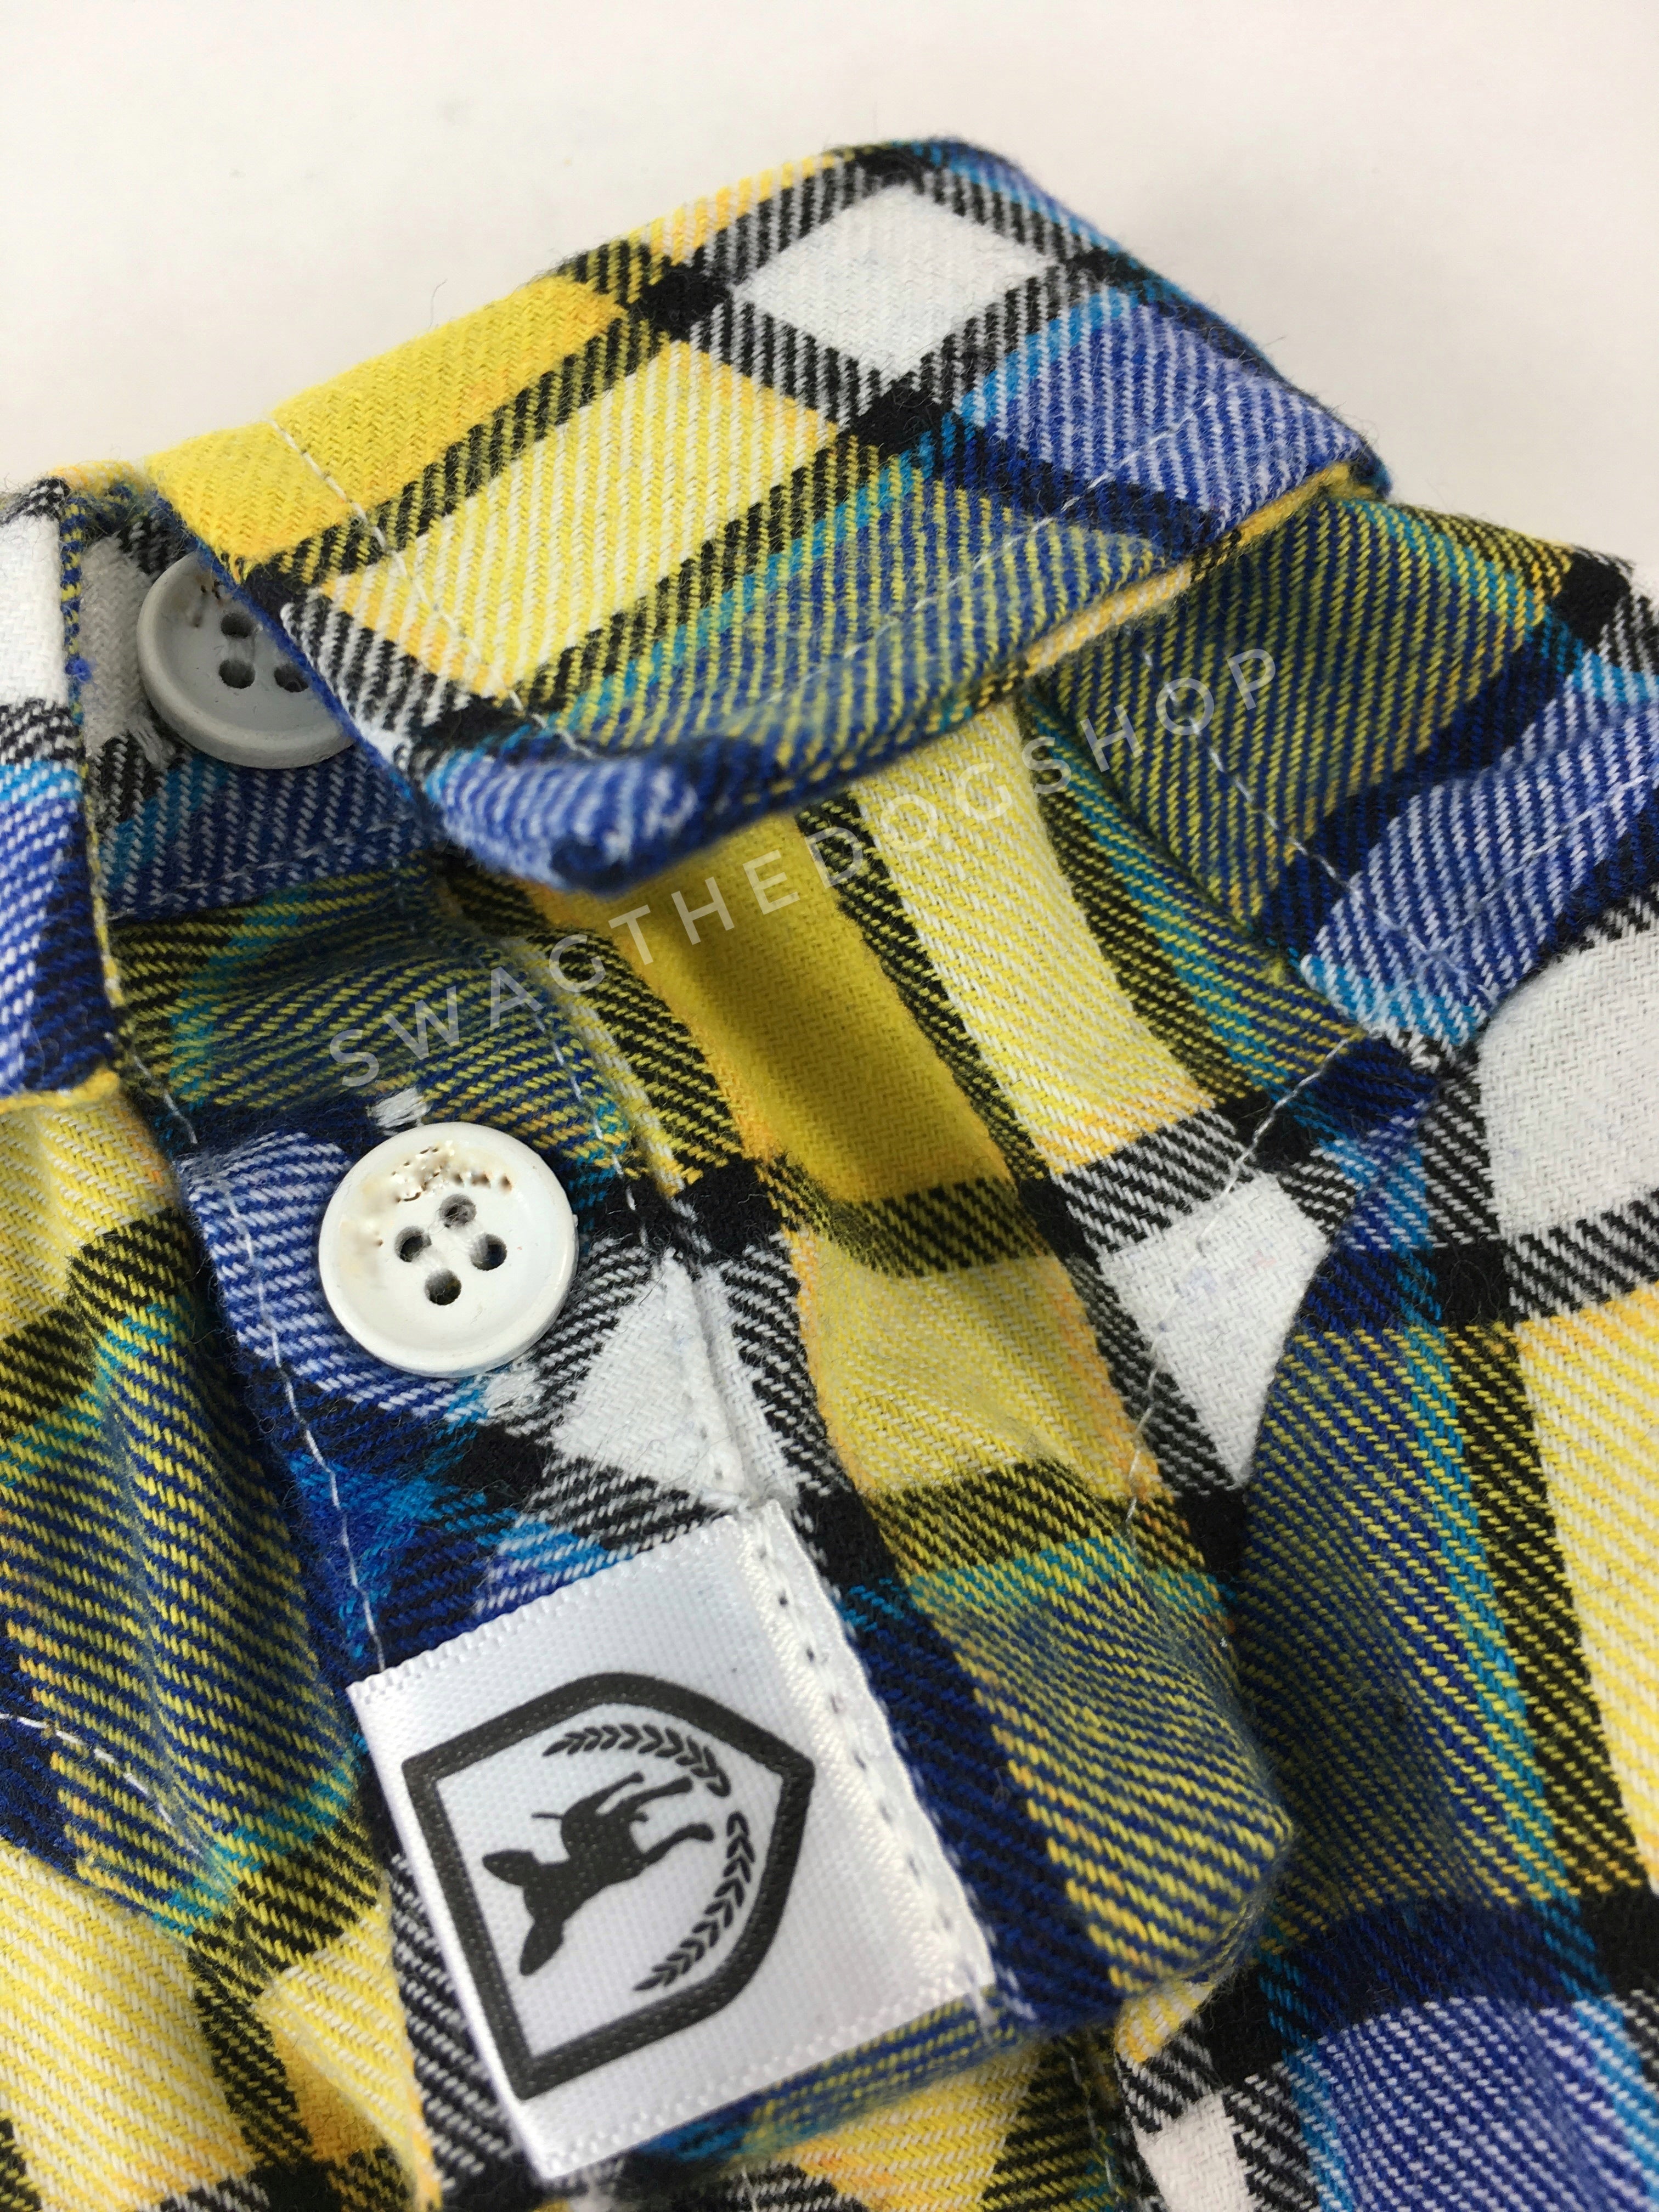 Royal Yellow Plaid Shirt - Close Up View of Label and Collar. Royal Blue and Yellow Plaid Shirt